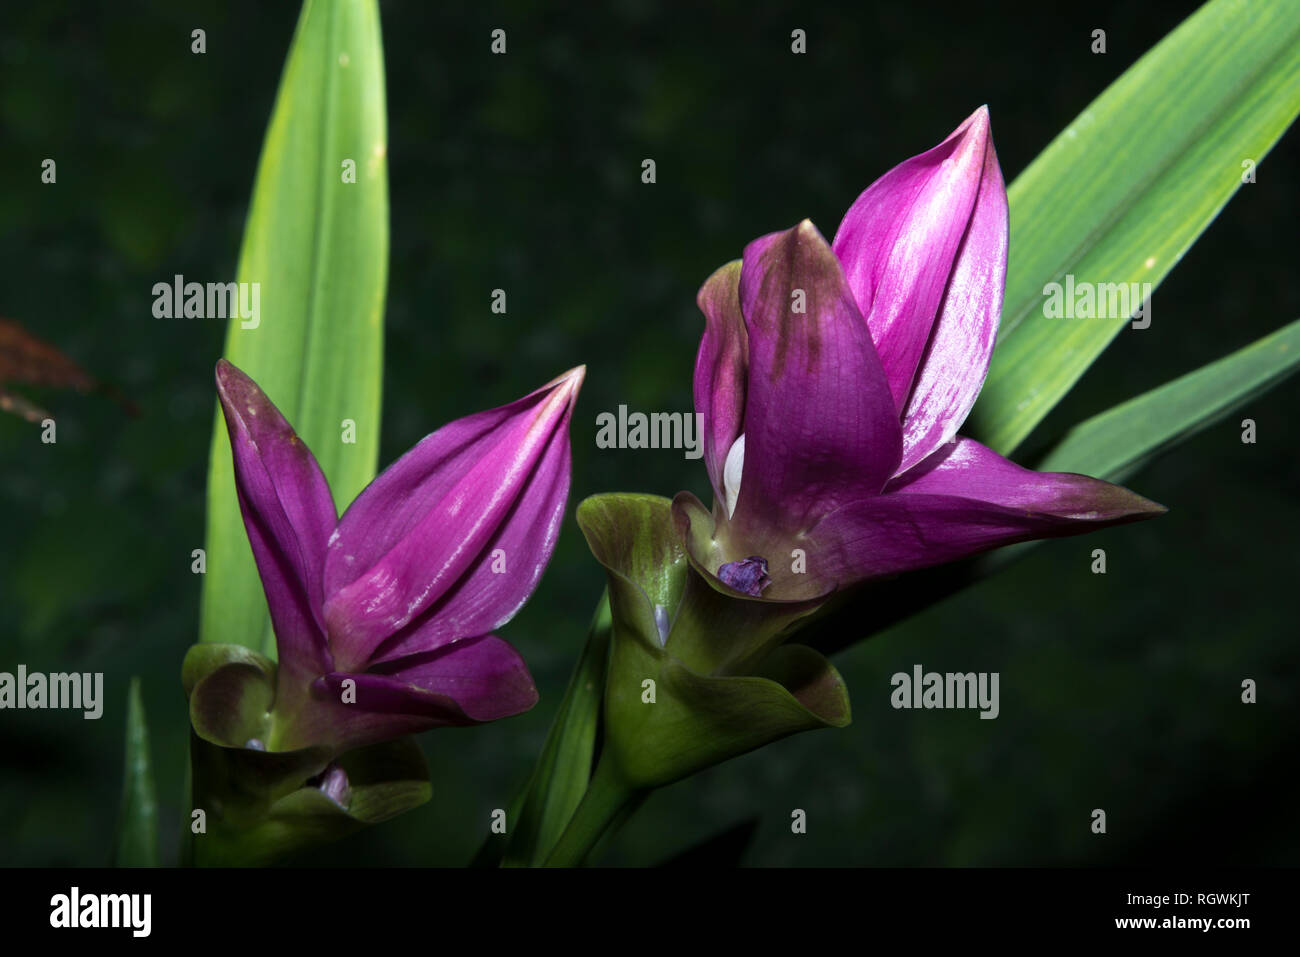 Siam tulip (Curcuma alismatifolia) Stock Photo